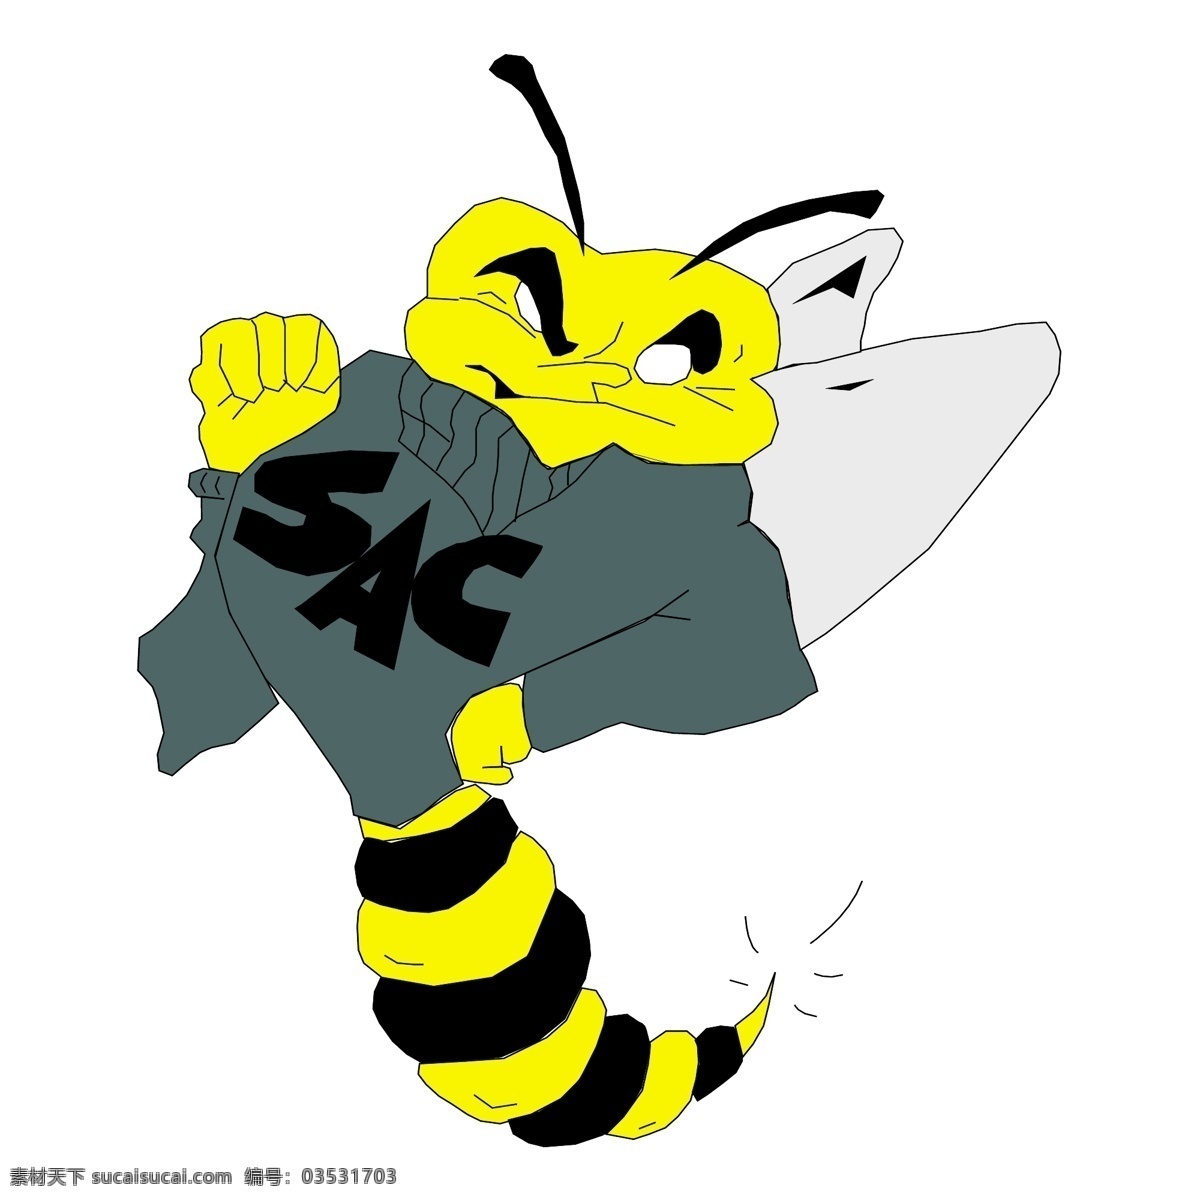 蜜蜂 昆虫 生物世界 矢量蜜蜂图 可爱蜜蜂 矢量